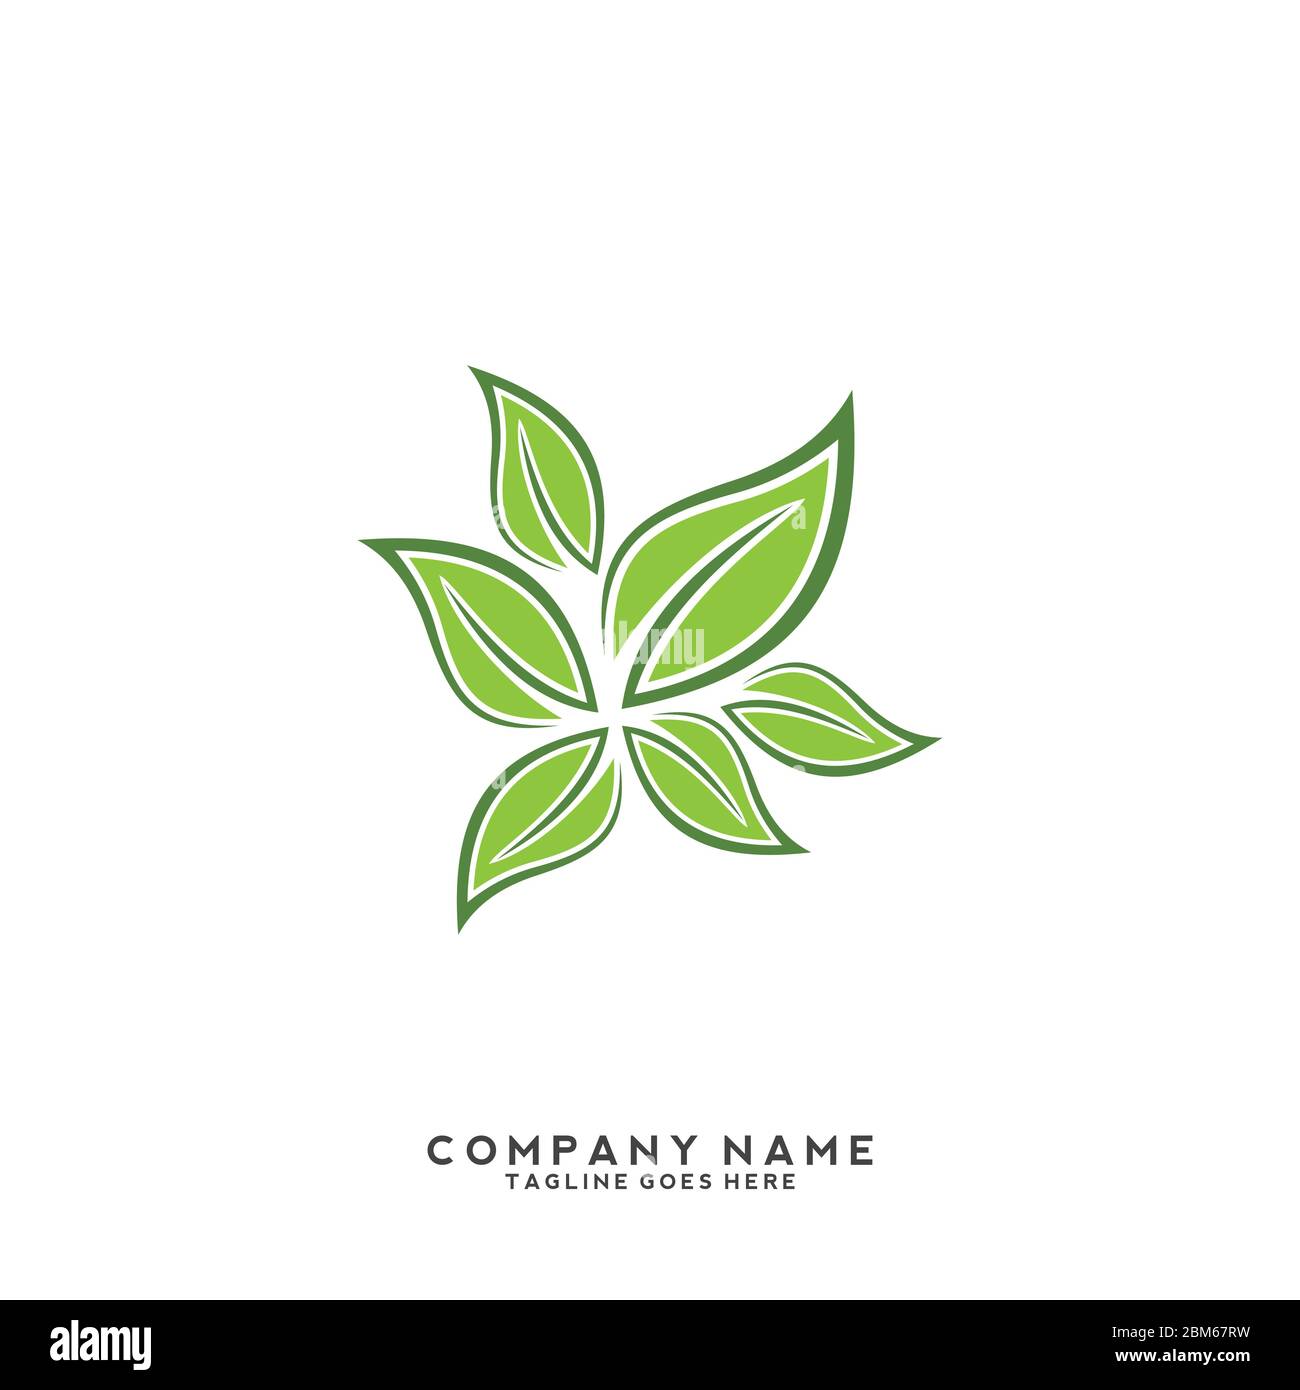 Vektorvorlage für umweltfreundliches Logo mit grünen Blättern Stock Vektor